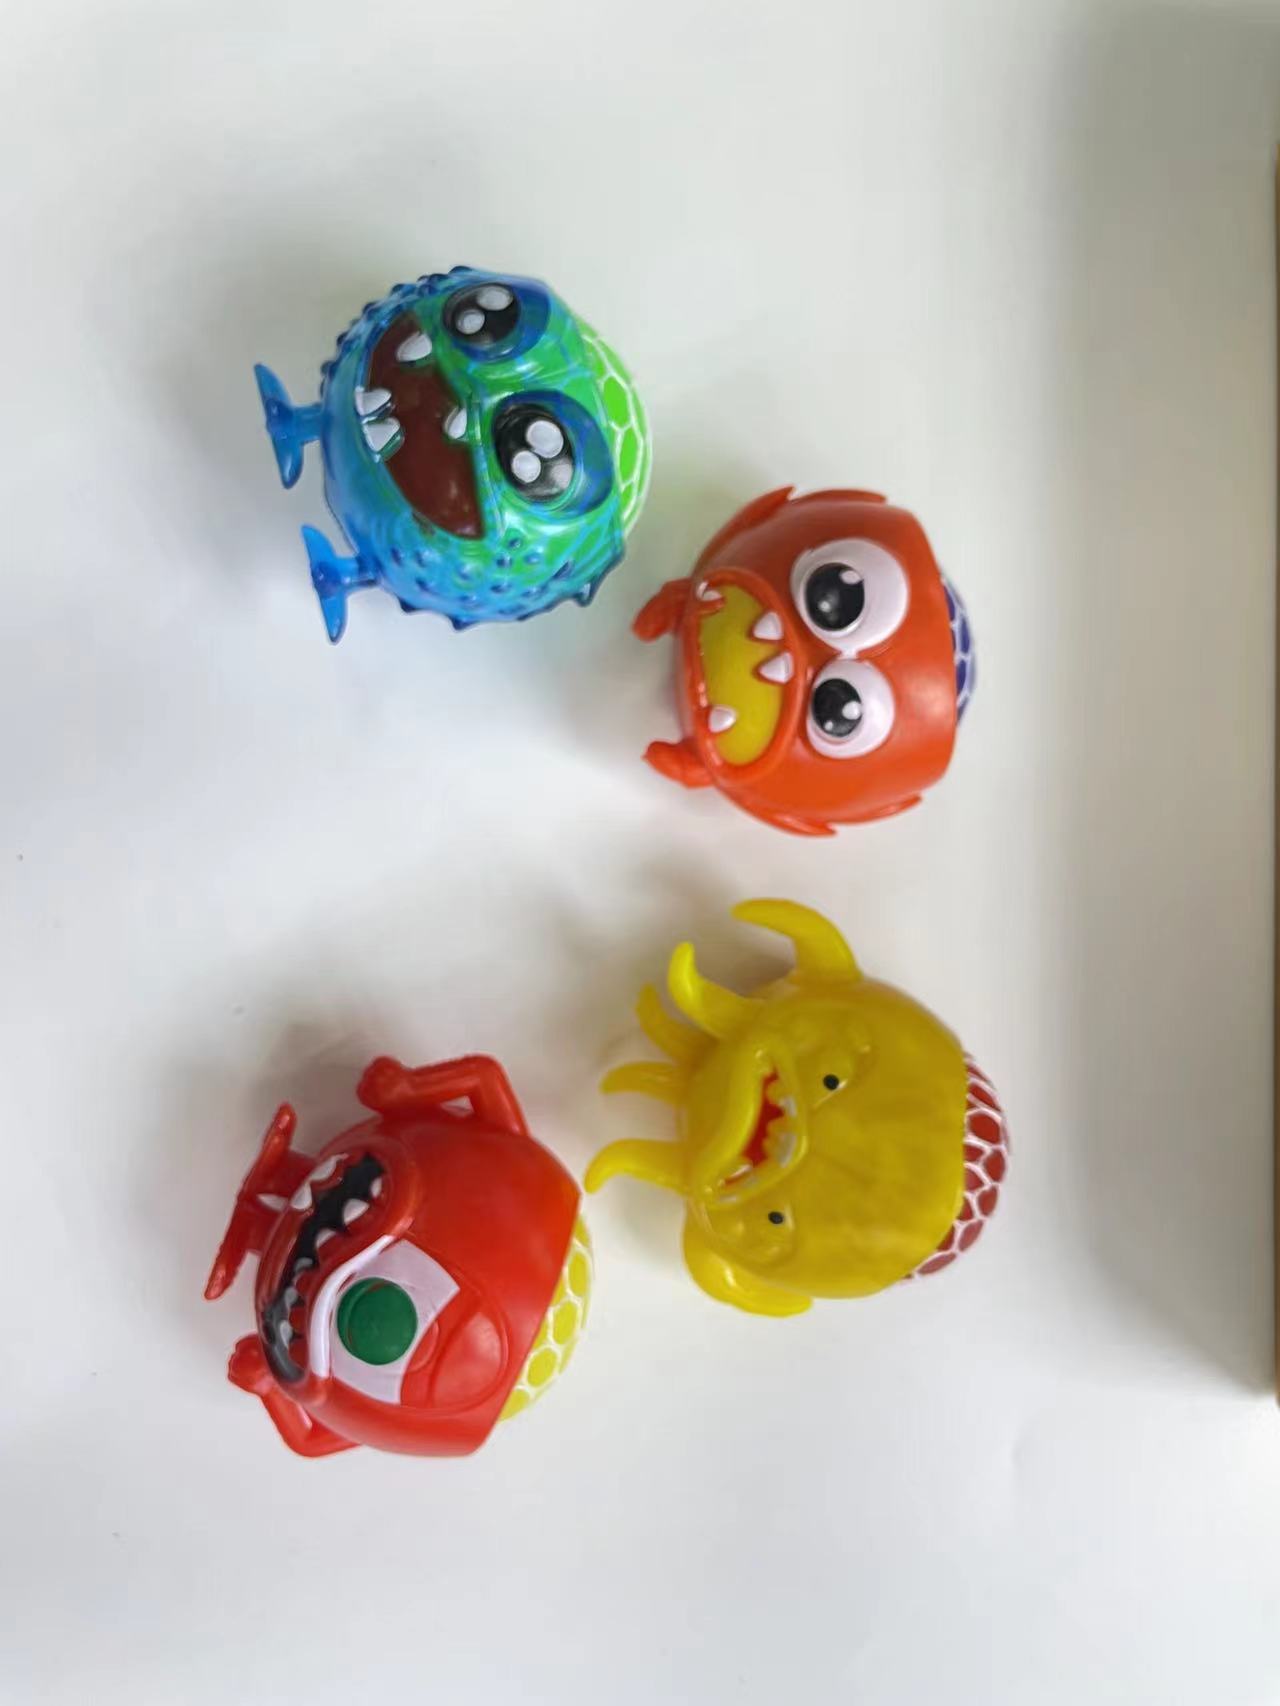 欣飞塑胶玩具搞笑葡萄球发泄玩具怪物葡萄球2895-57图